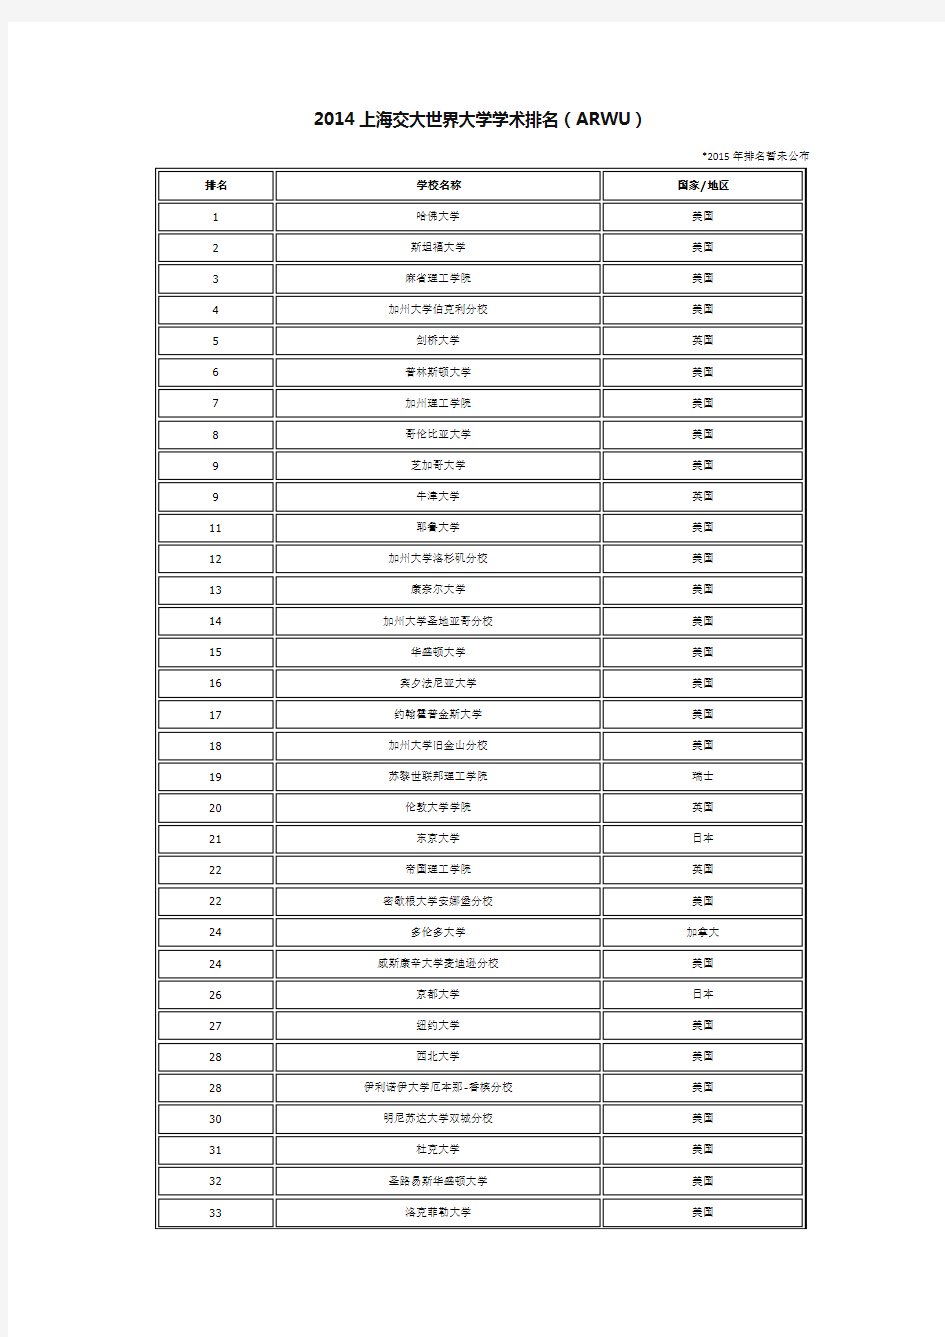 世界大学排名(ARWU、QS、THE前300名)